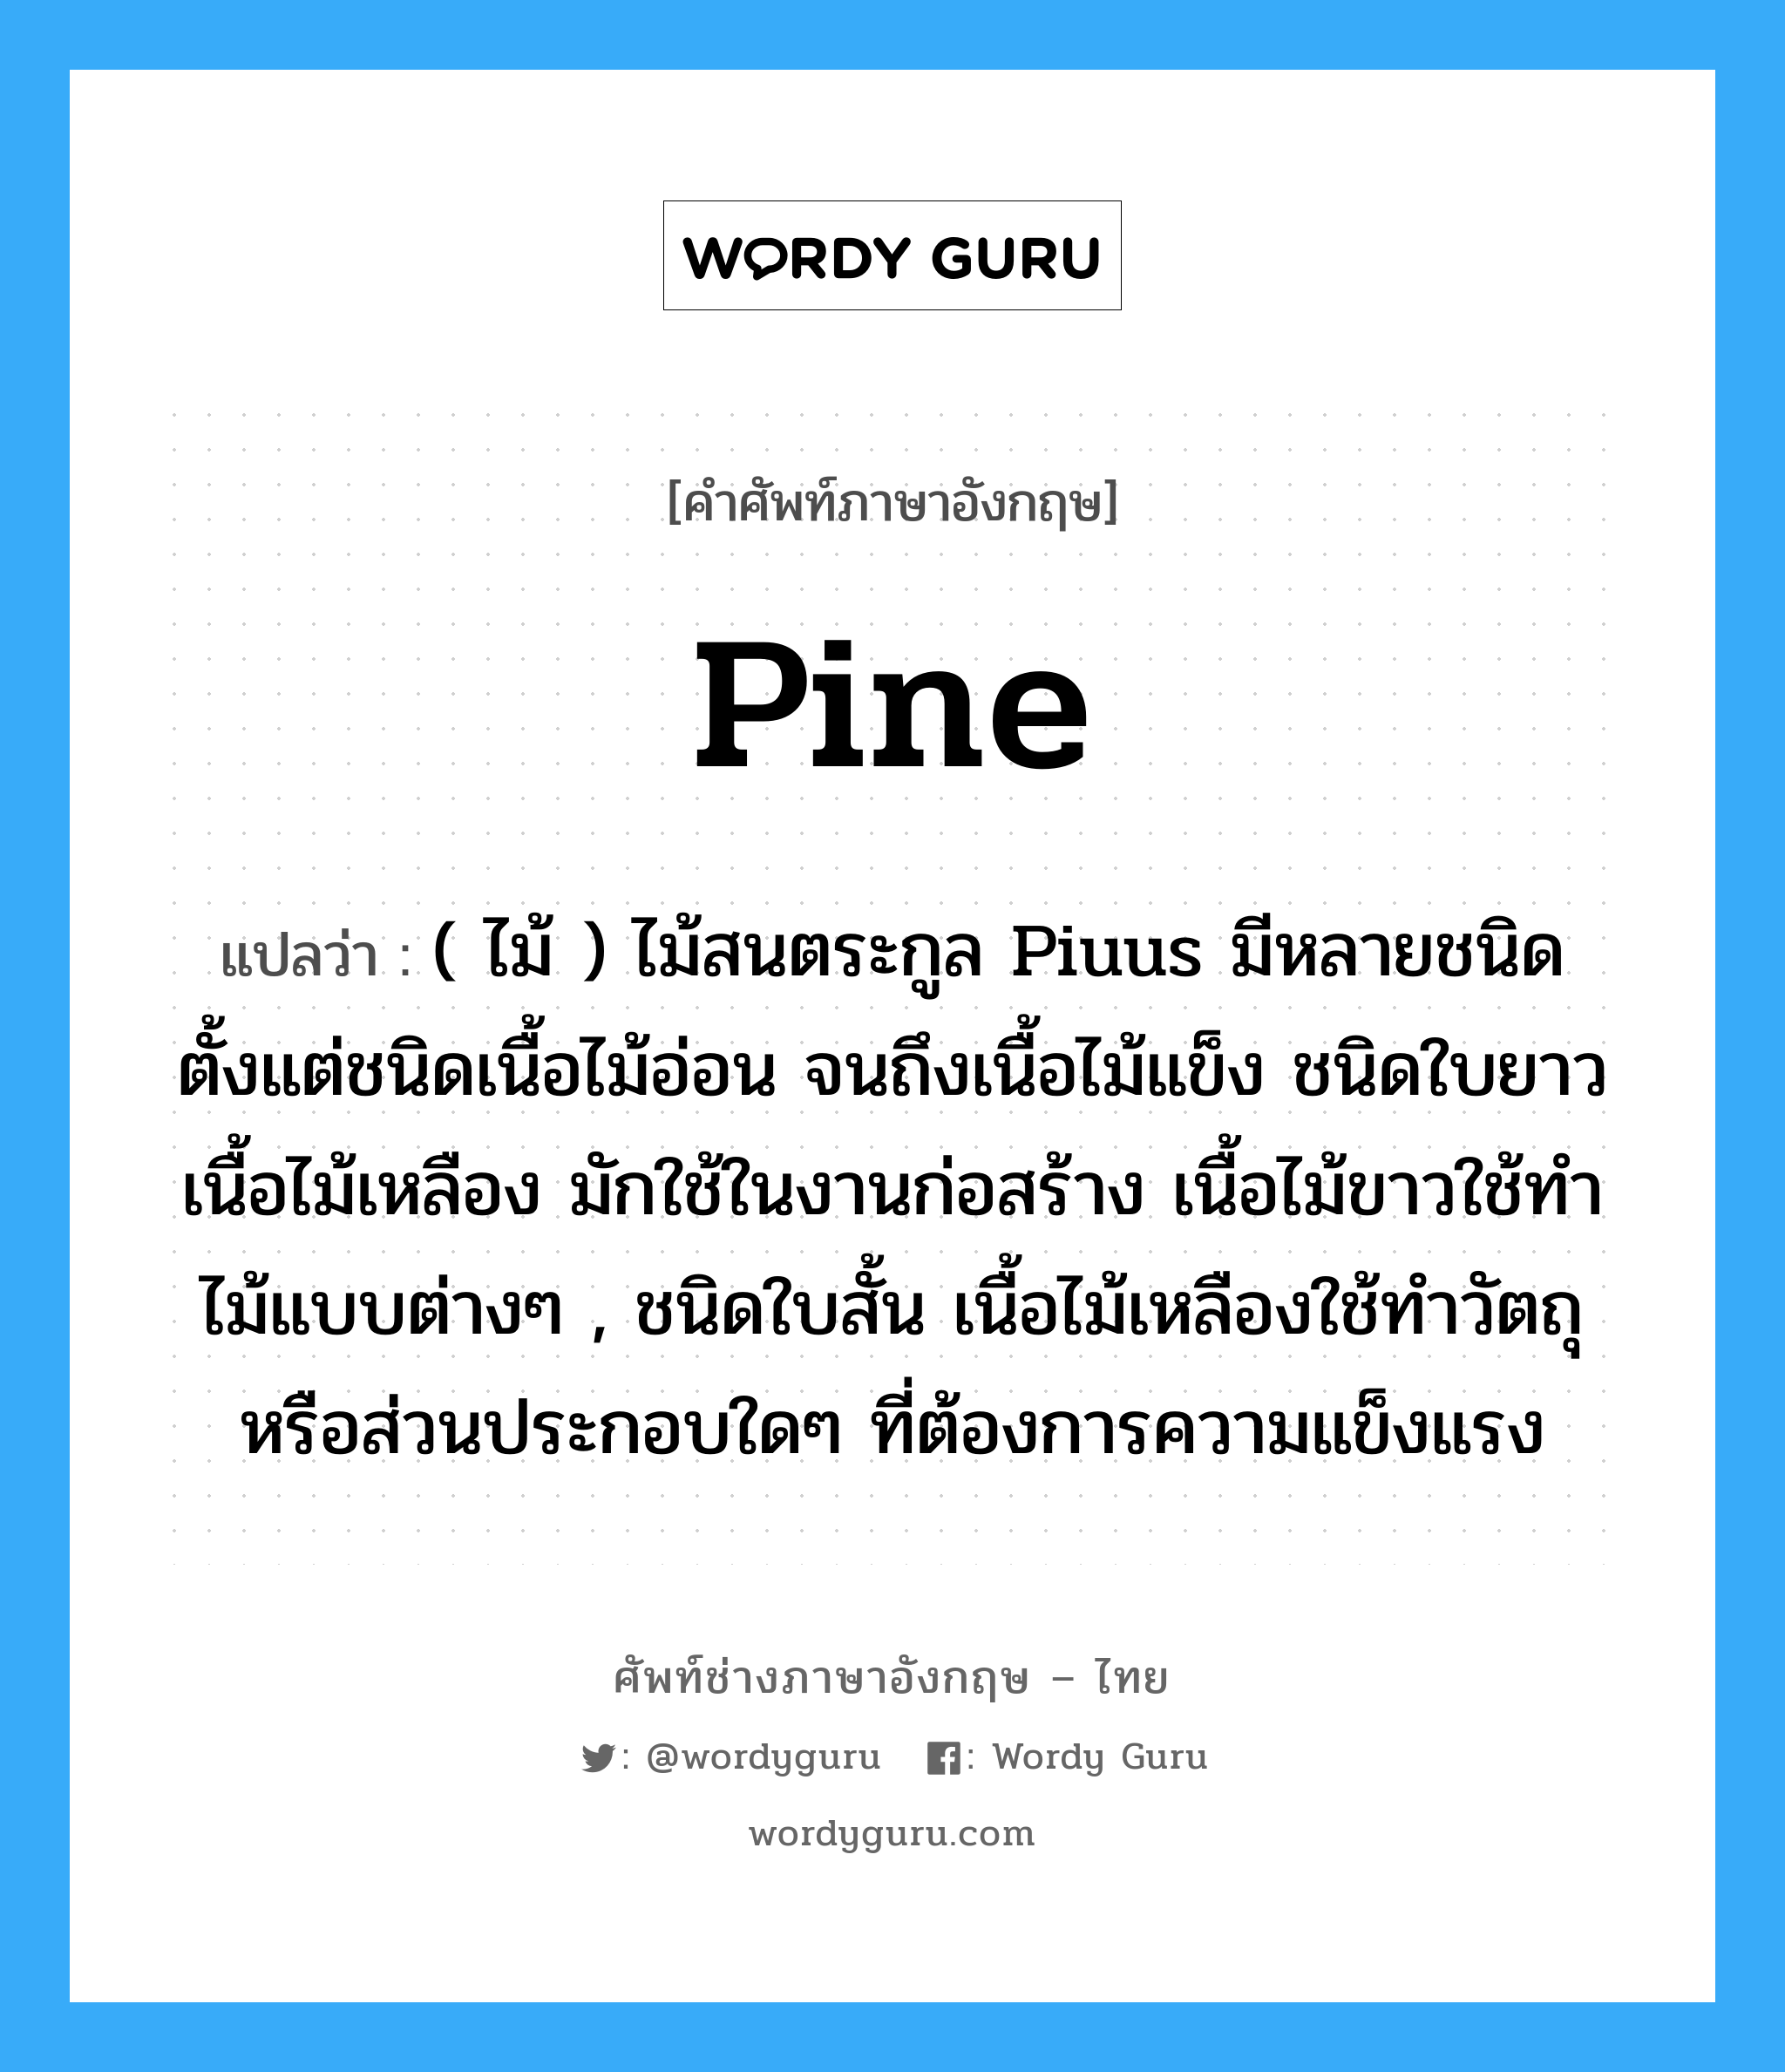 pine แปลว่า?, คำศัพท์ช่างภาษาอังกฤษ - ไทย pine คำศัพท์ภาษาอังกฤษ pine แปลว่า ( ไม้ ) ไม้สนตระกูล Piuus มีหลายชนิด ตั้งแต่ชนิดเนื้อไม้อ่อน จนถึงเนื้อไม้แข็ง ชนิดใบยาวเนื้อไม้เหลือง มักใช้ในงานก่อสร้าง เนื้อไม้ขาวใช้ทำไม้แบบต่างๆ , ชนิดใบสั้น เนื้อไม้เหลืองใช้ทำวัตถุหรือส่วนประกอบใดๆ ที่ต้องการความแข็งแรง